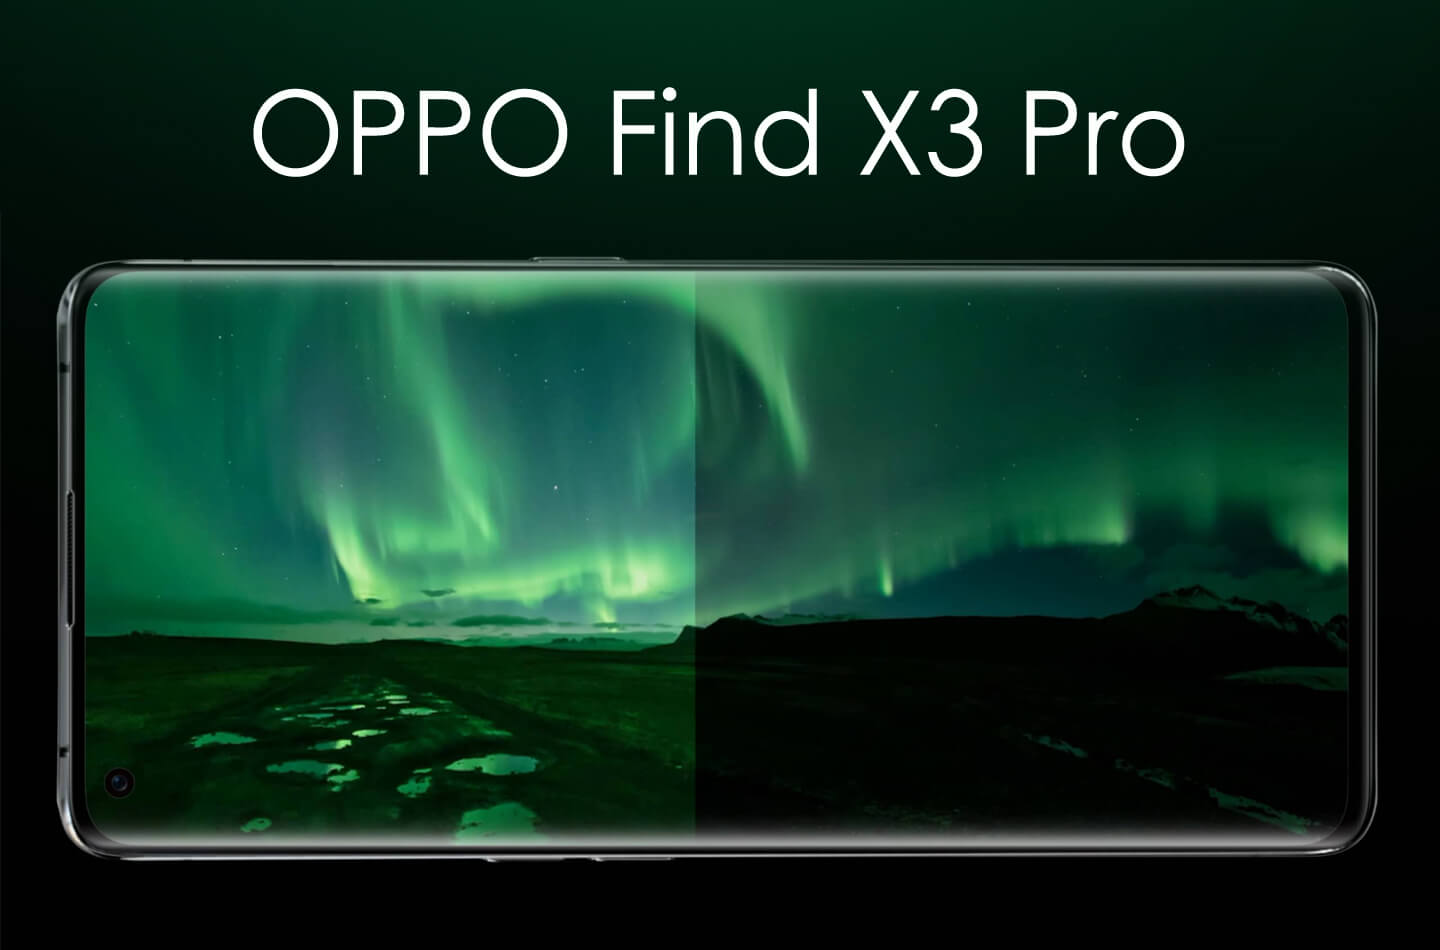 Find X3 Pro